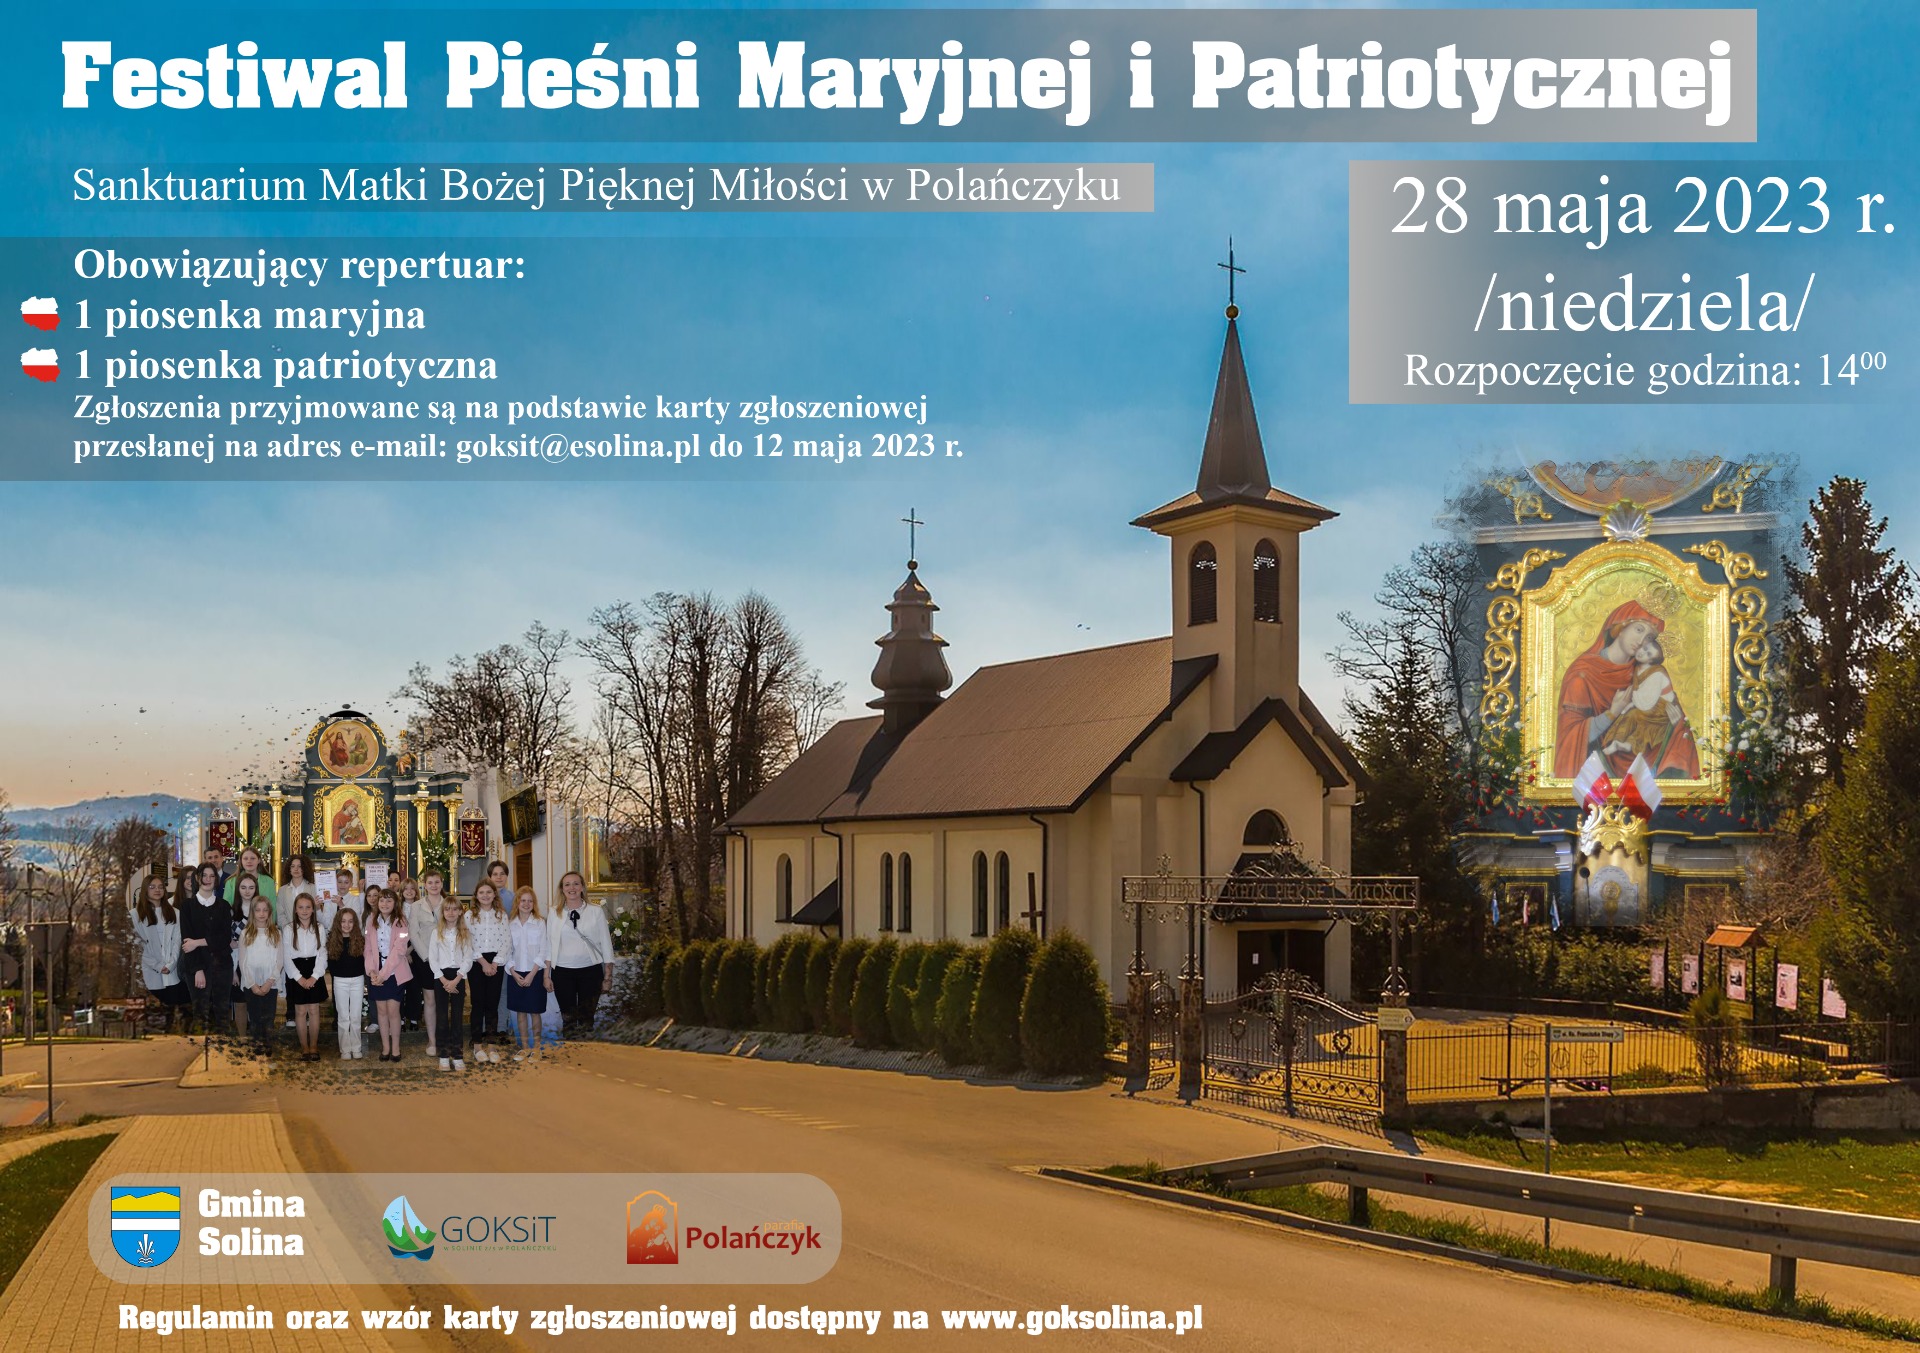 Festiwal Pieśni Maryjnej i Patriotycznej - Obrazek 1